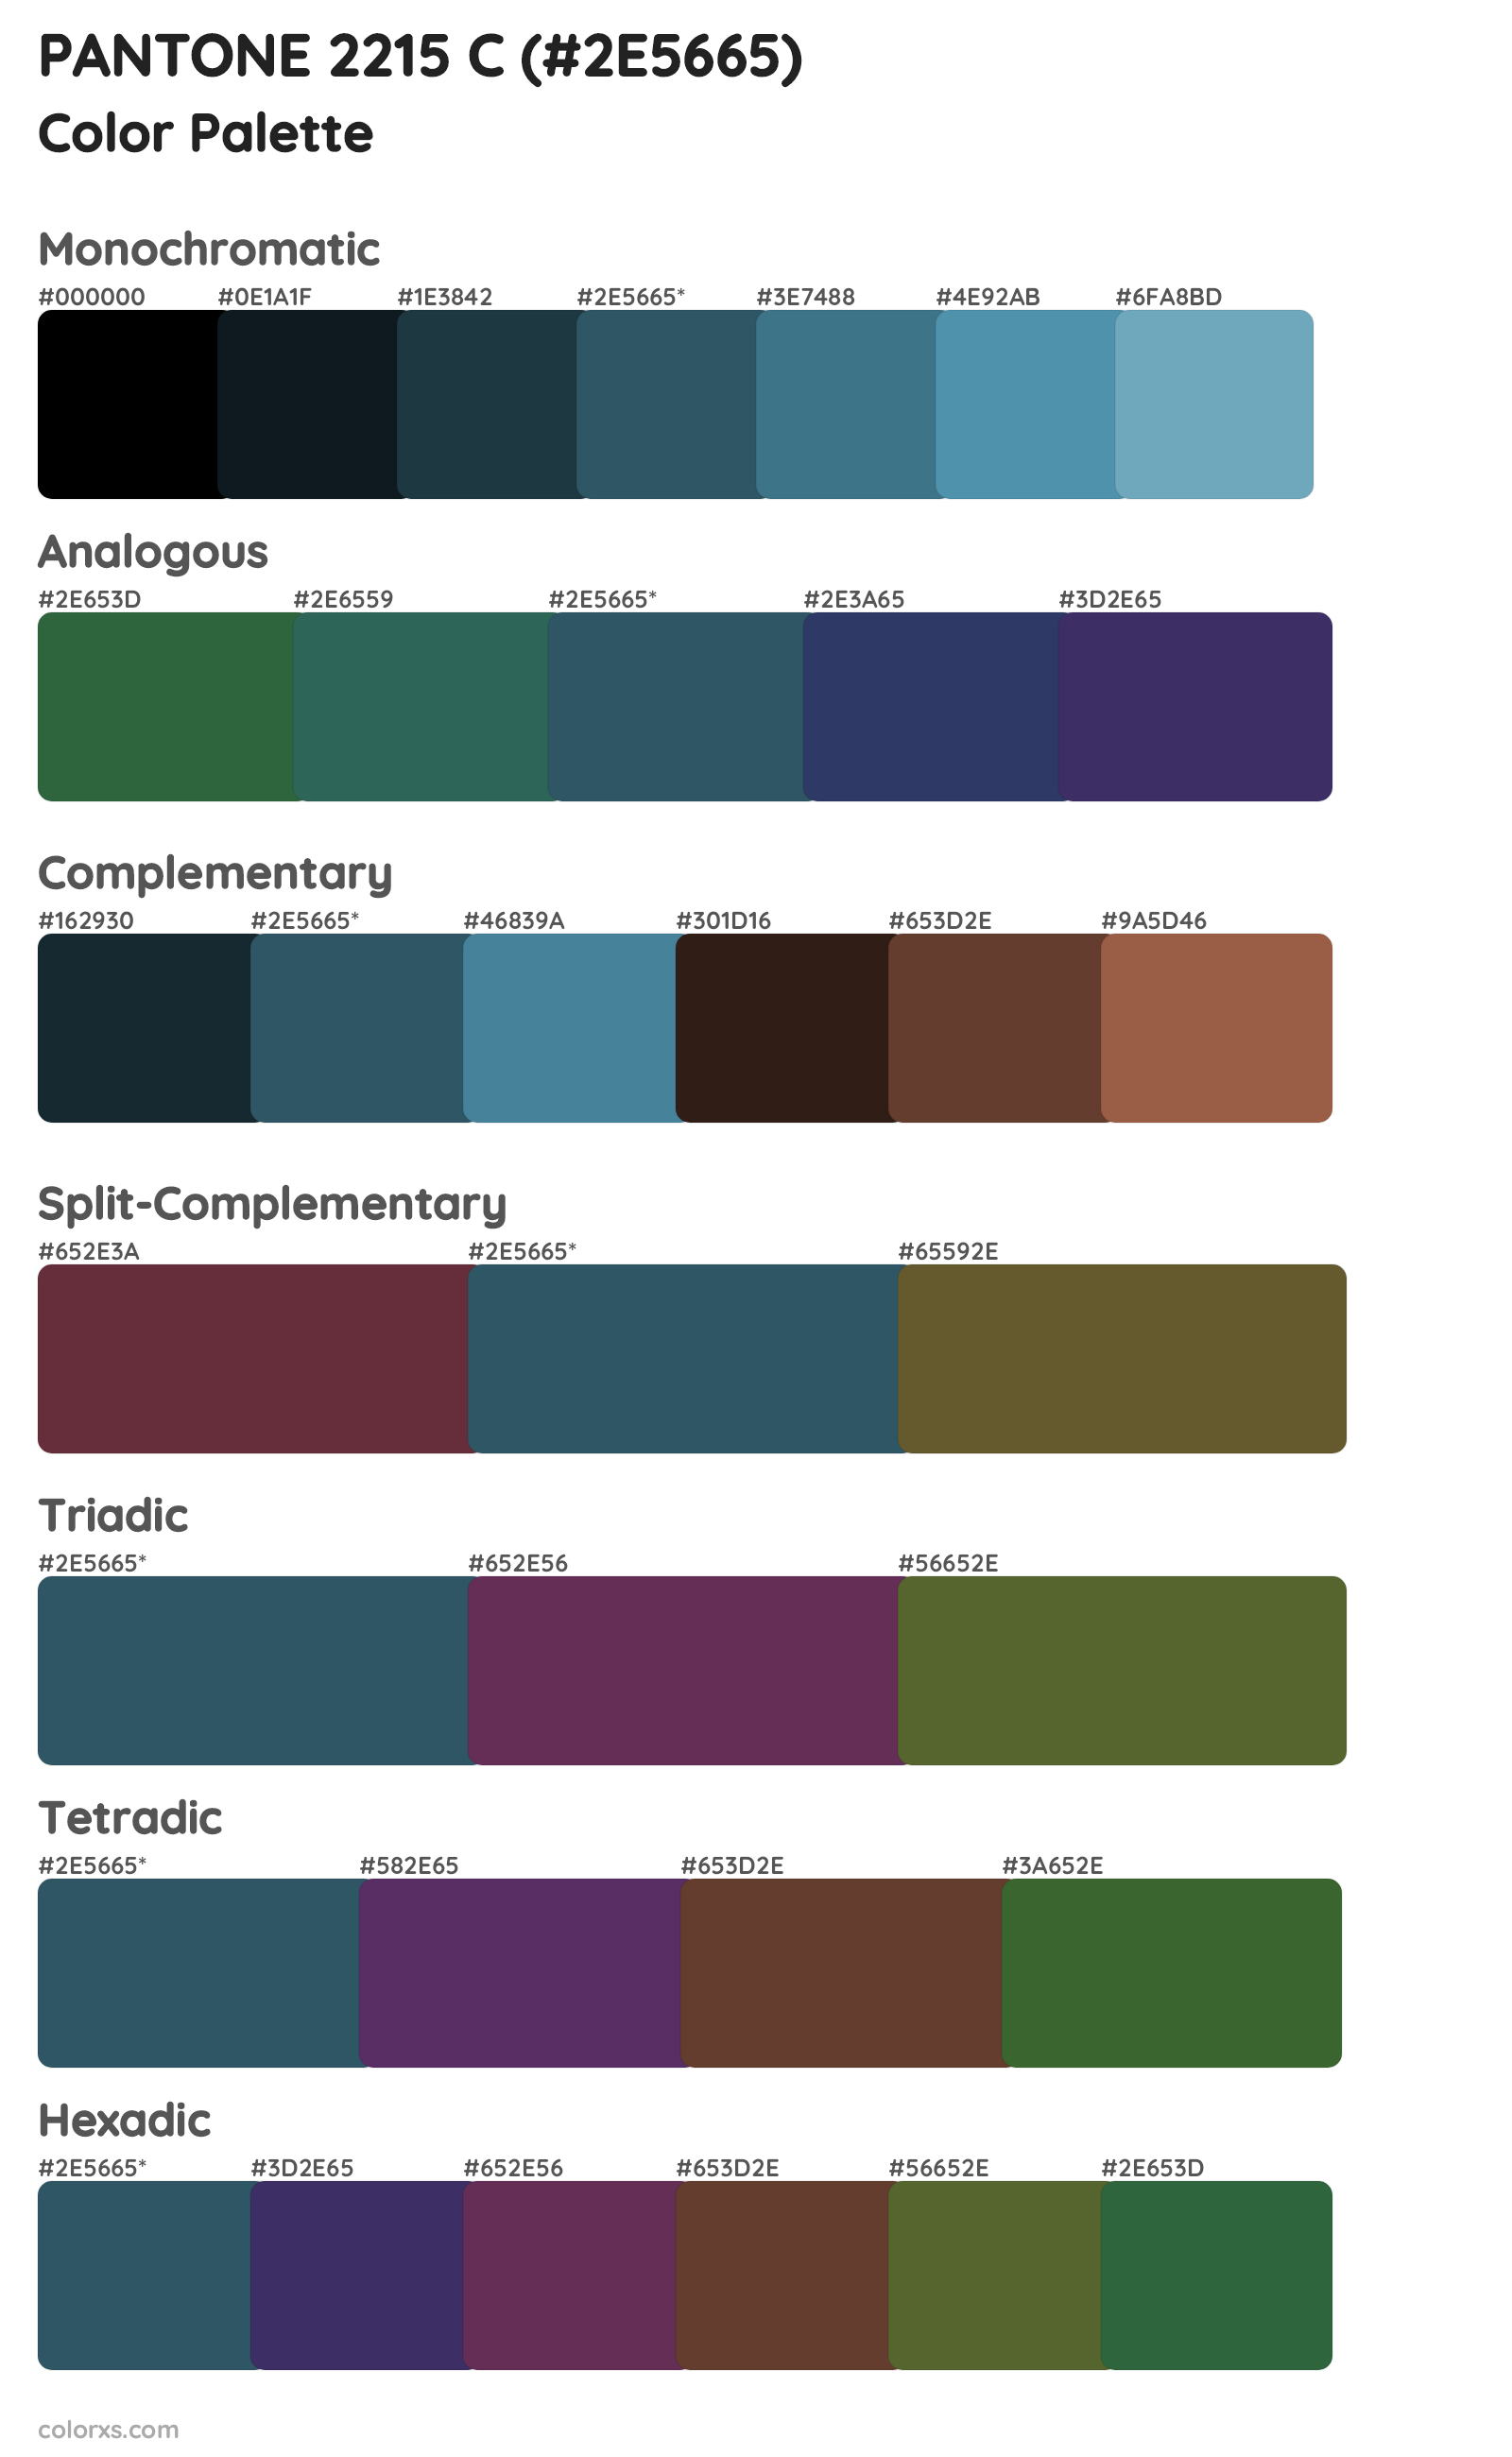 PANTONE 2215 C Color Scheme Palettes